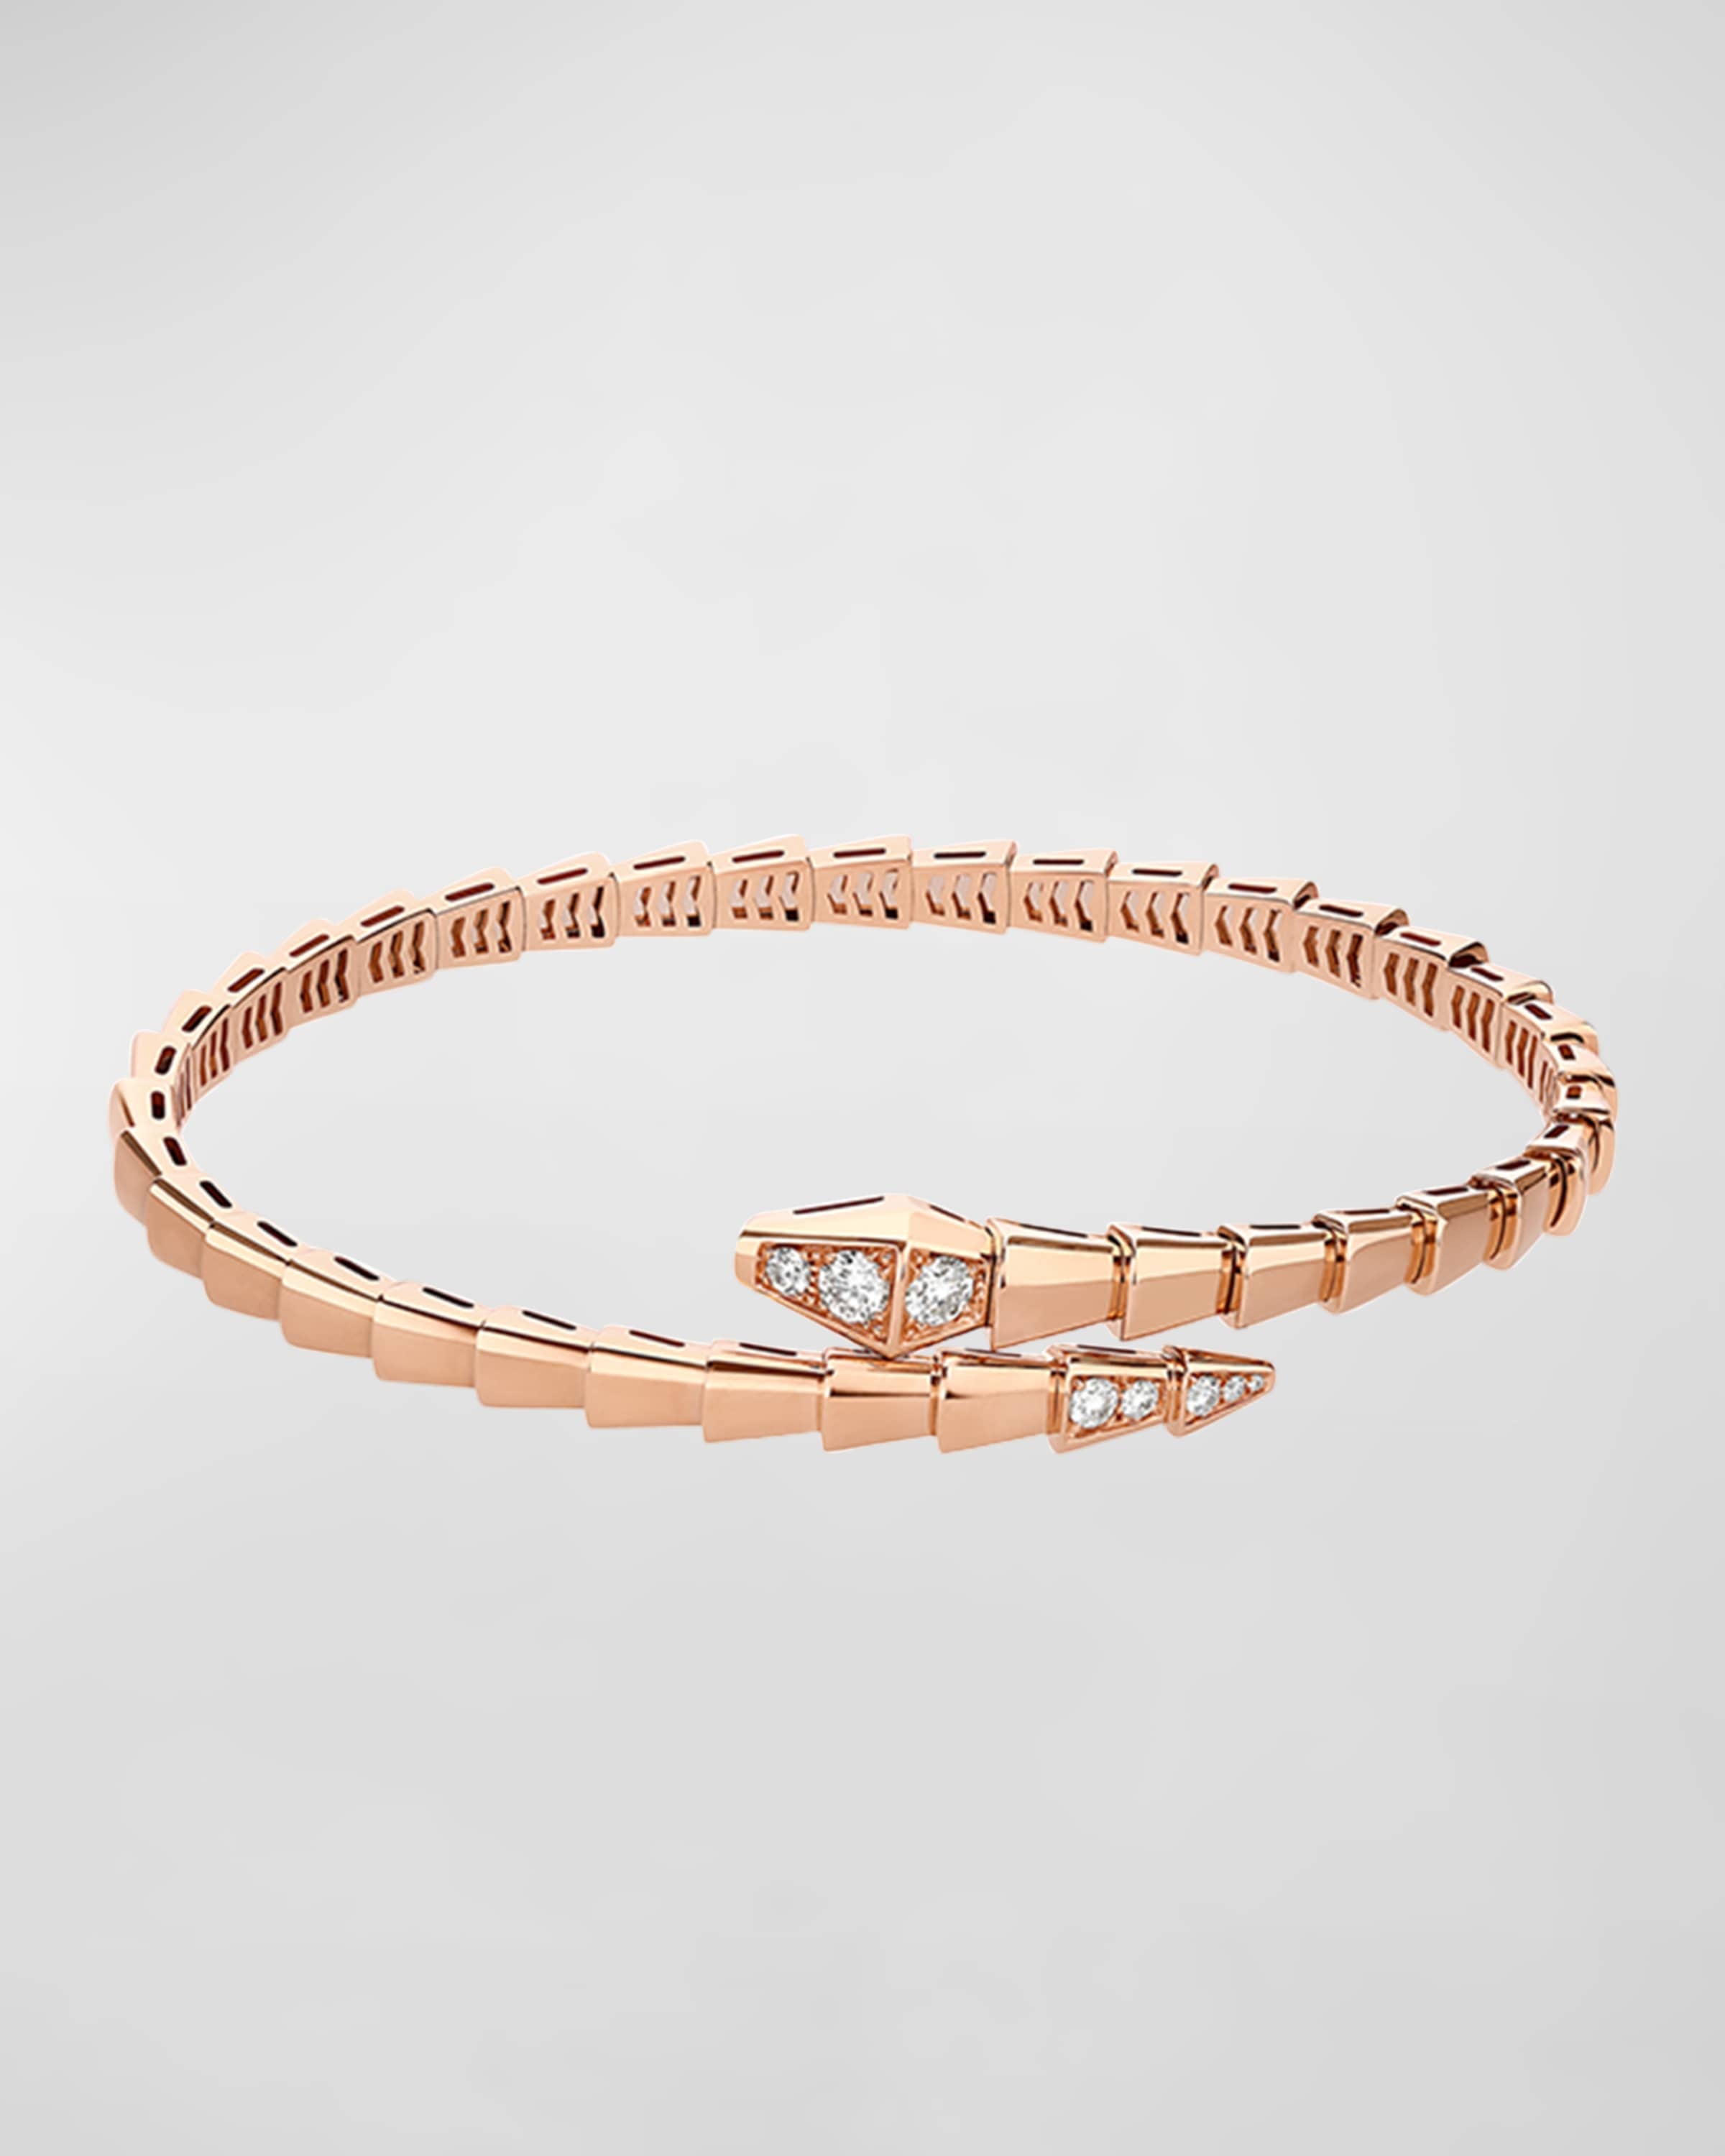 Serpenti Viper Bracelet in 18k Rose Gold and Diamonds, Size L - 4